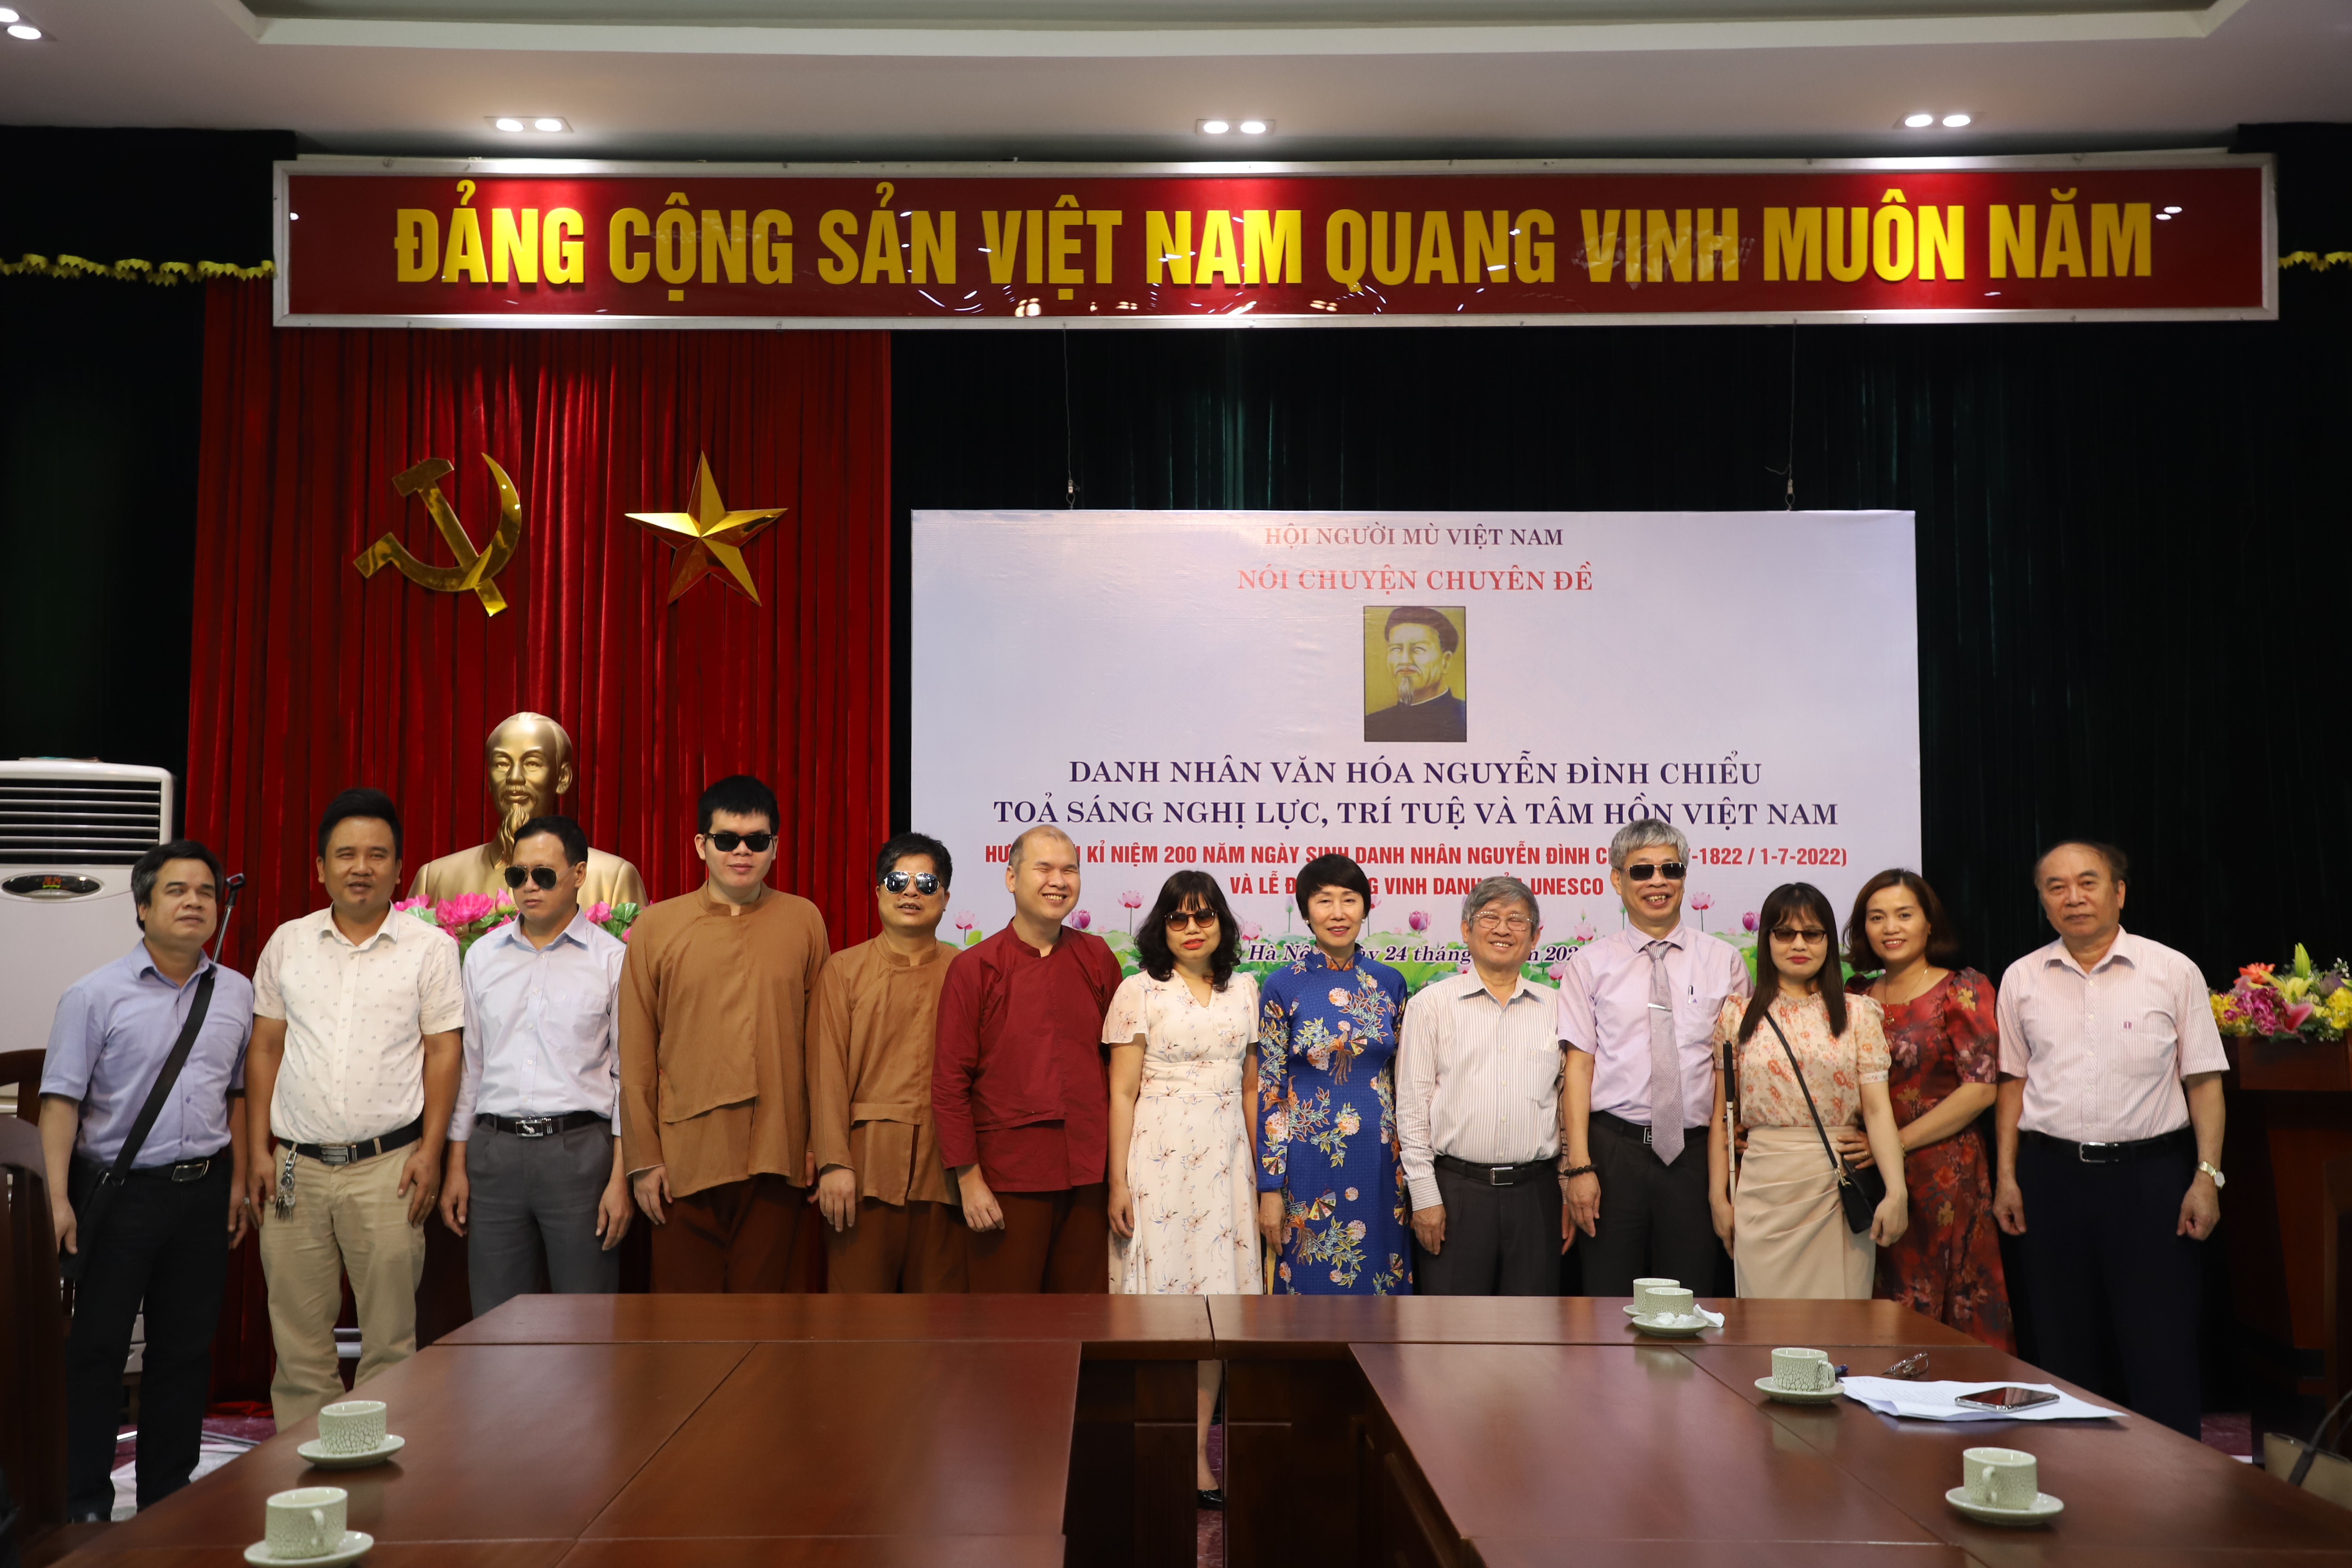 Danh nhân văn hóa Nguyễn Đình Chiểu tỏa sáng nghị lực, trí tuệ và tâm hồn Việt Nam